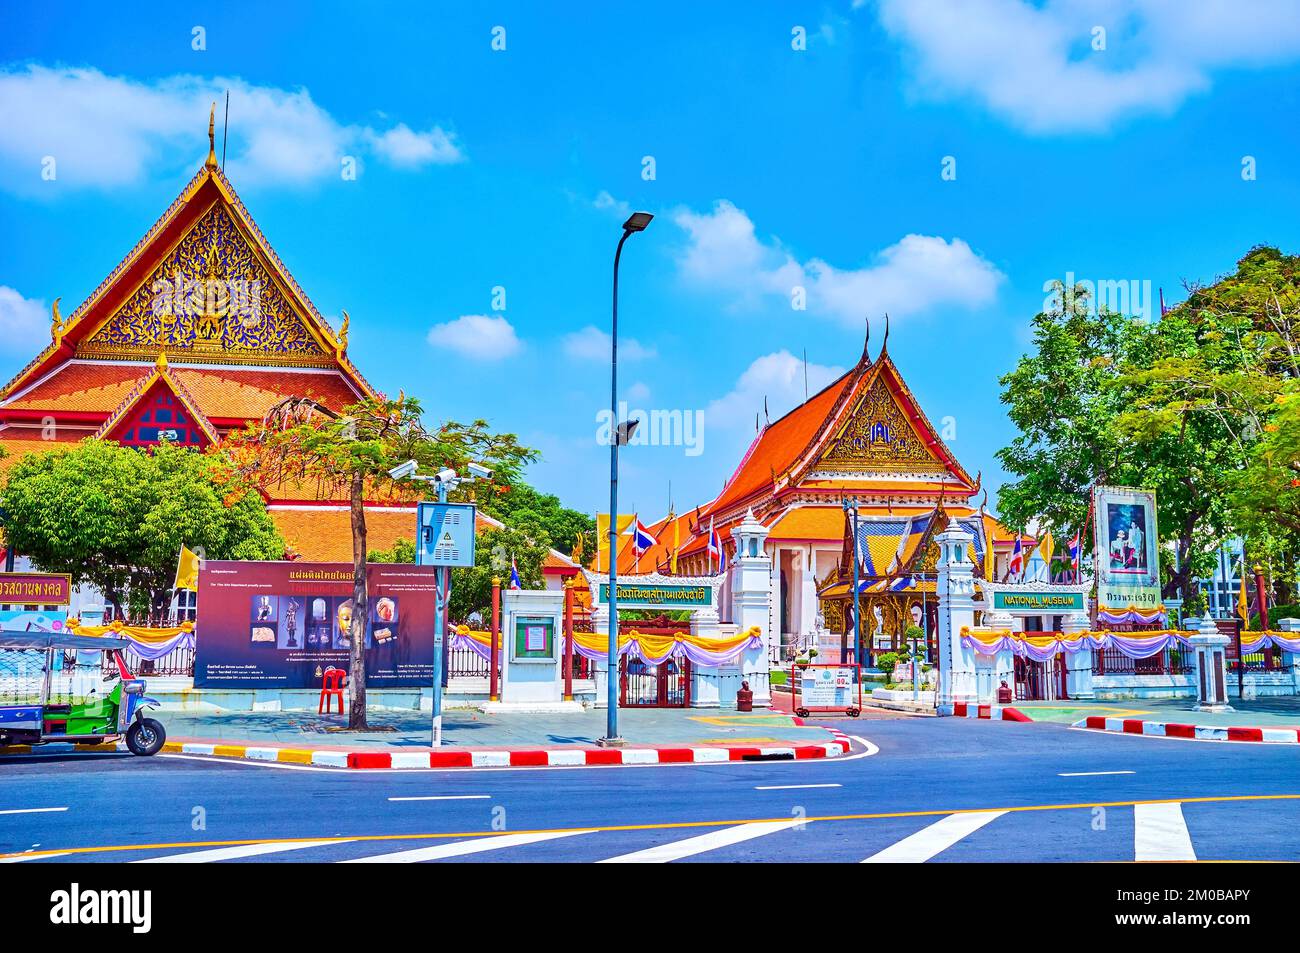 BANGKOK, THAILAND - 23. APRIL 2019: Der Haupteingang zum Nationalmuseum von Bangkok mit herausragendem Gebäude im thailändischen Stil mit vergoldeten Elementen Stockfoto